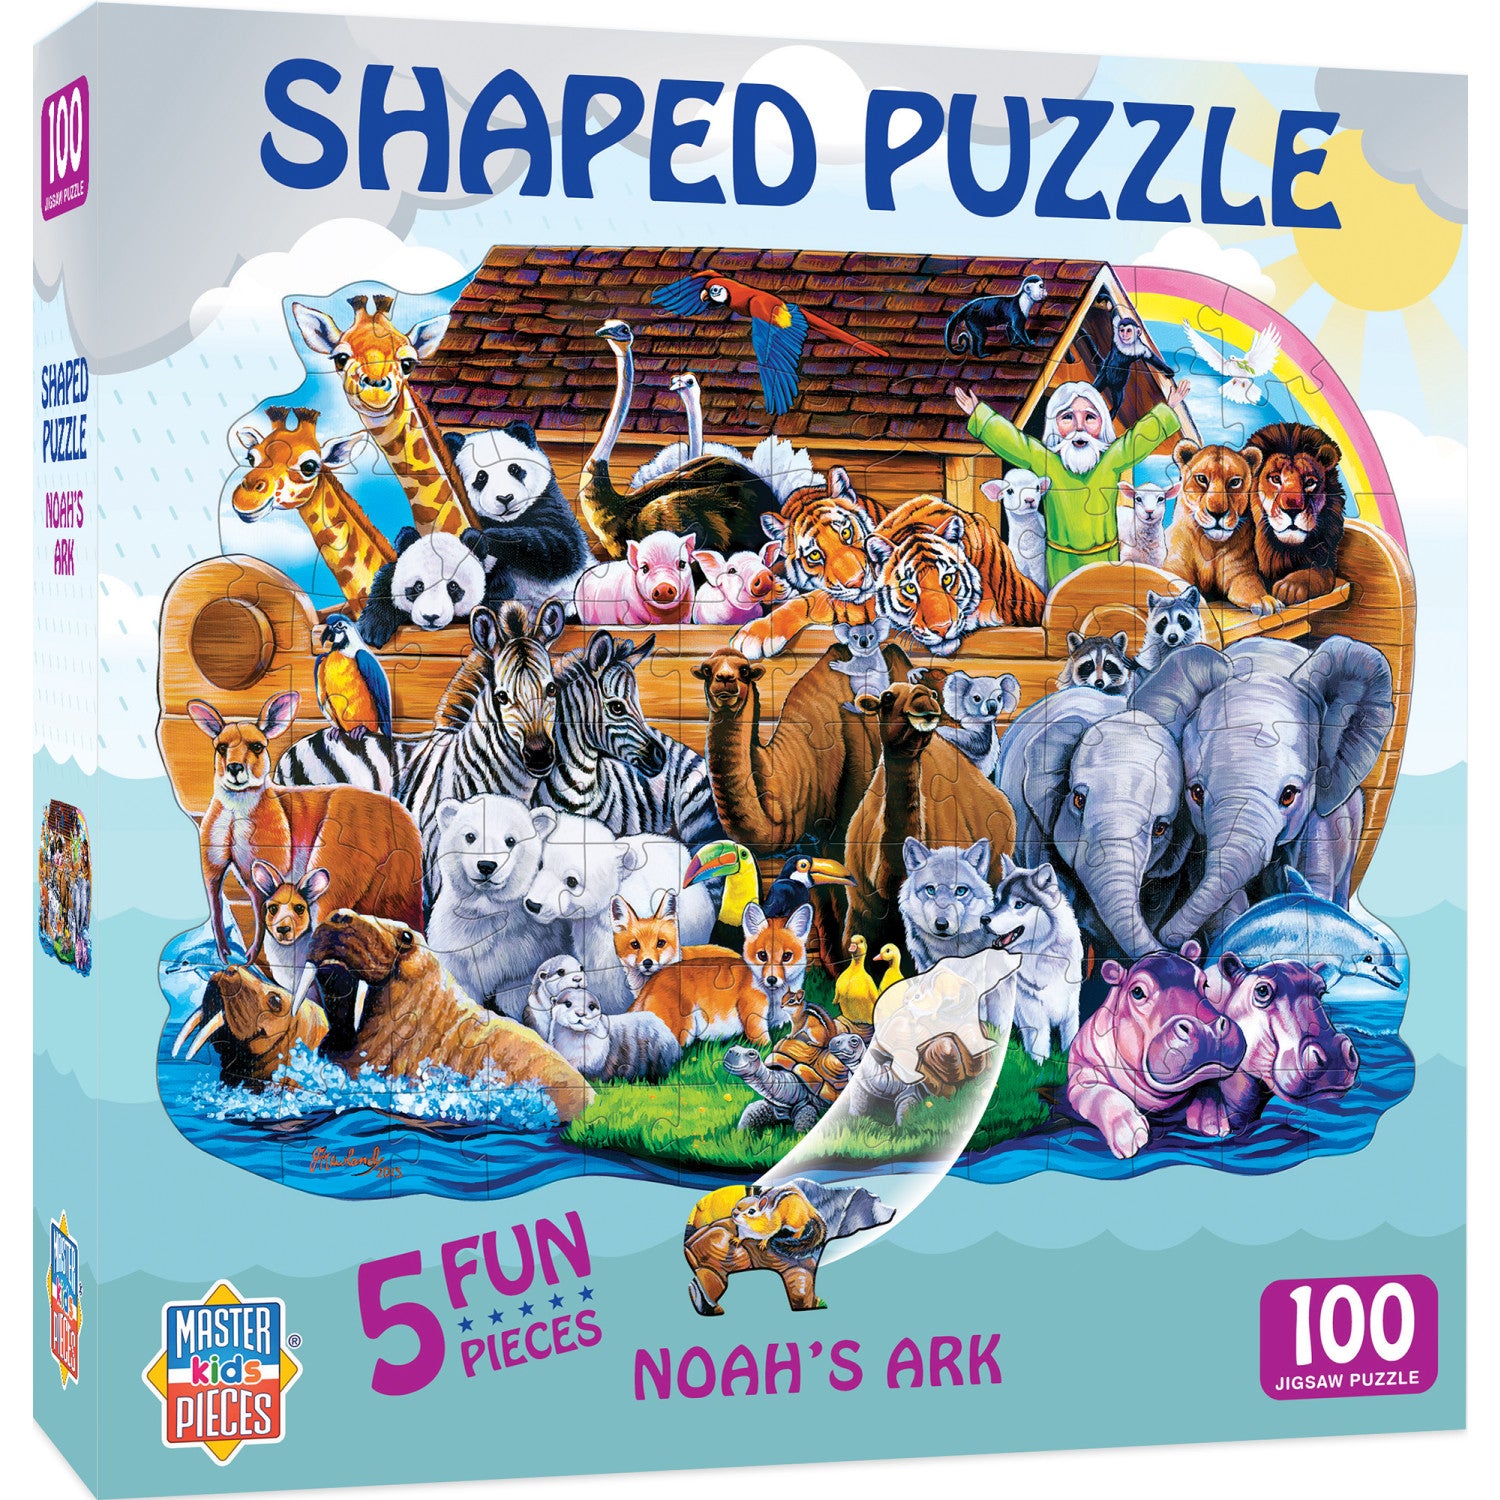 Noah's Ark - 100 Piece Shaped Puzzle